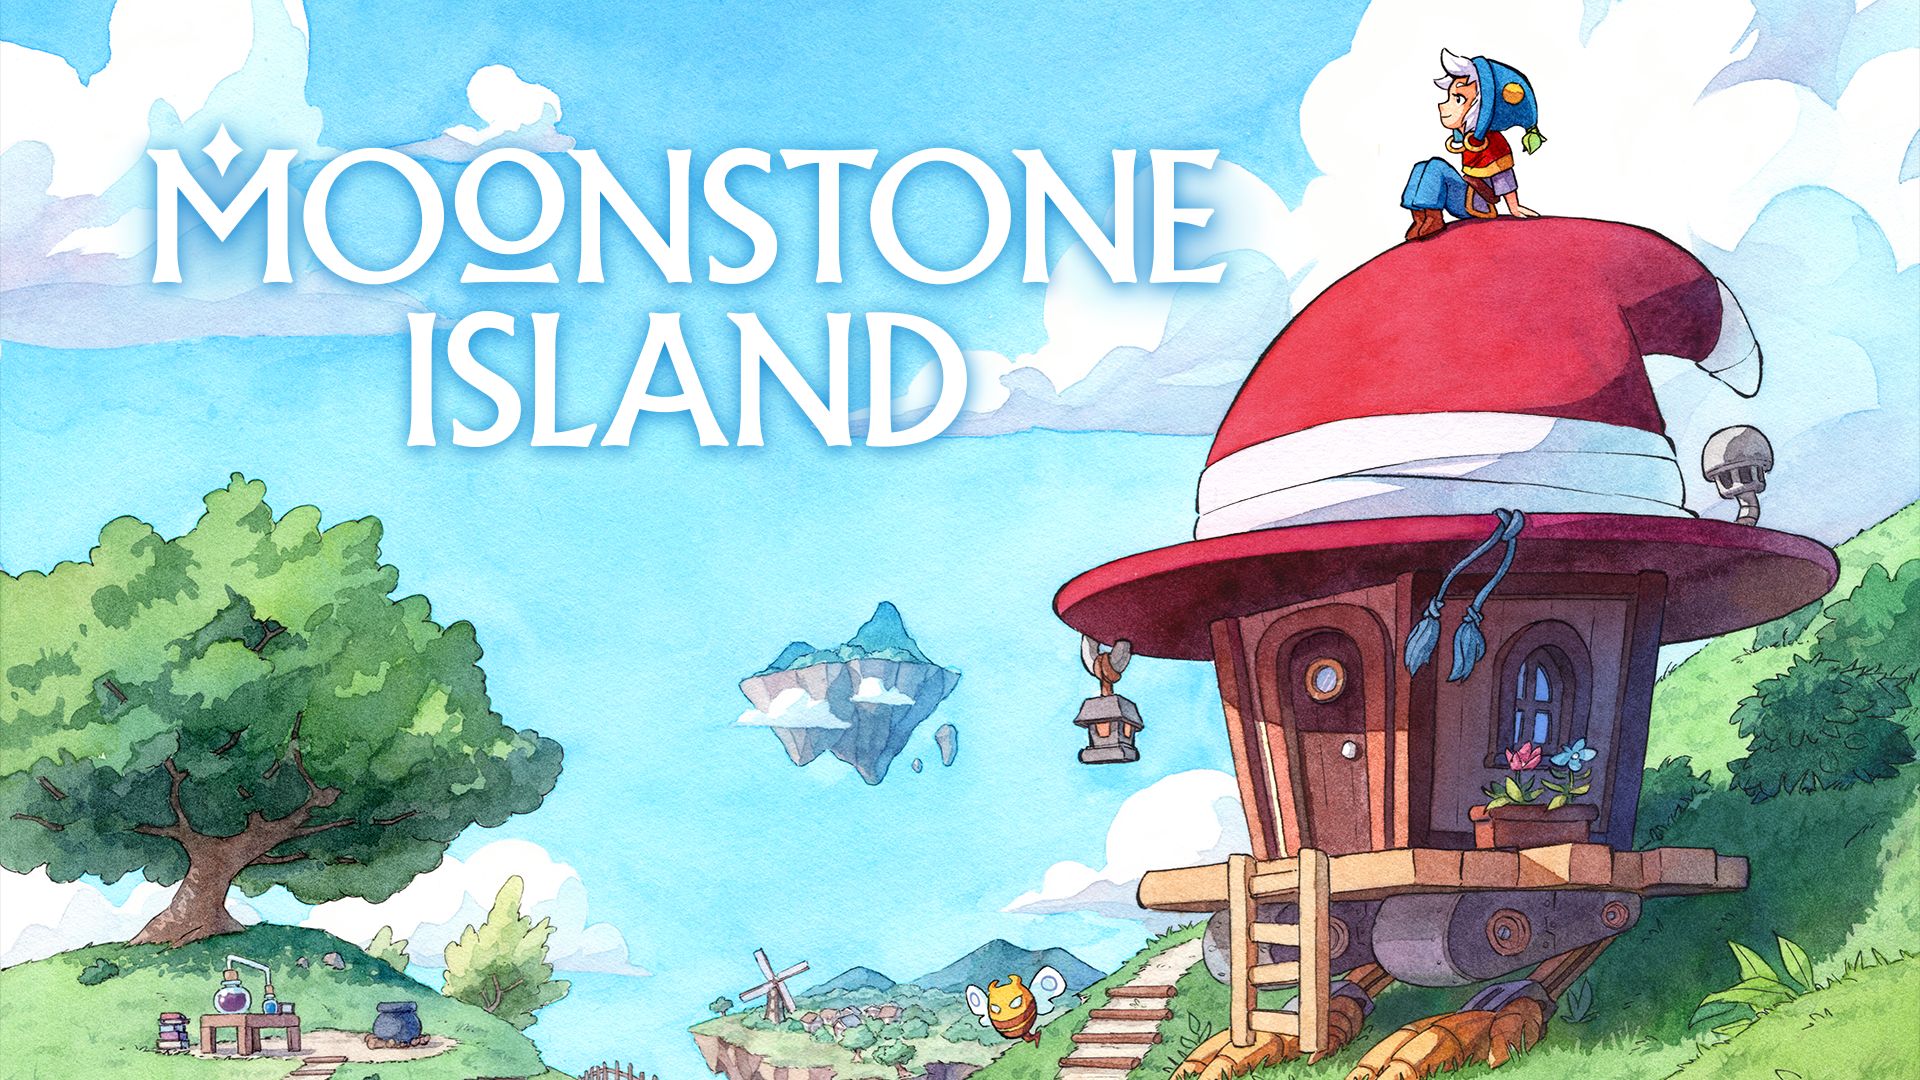 #Moonstone Island: Beweist eure Alchemie-Künste, zähmt Naturgeister und erkundet Tempel